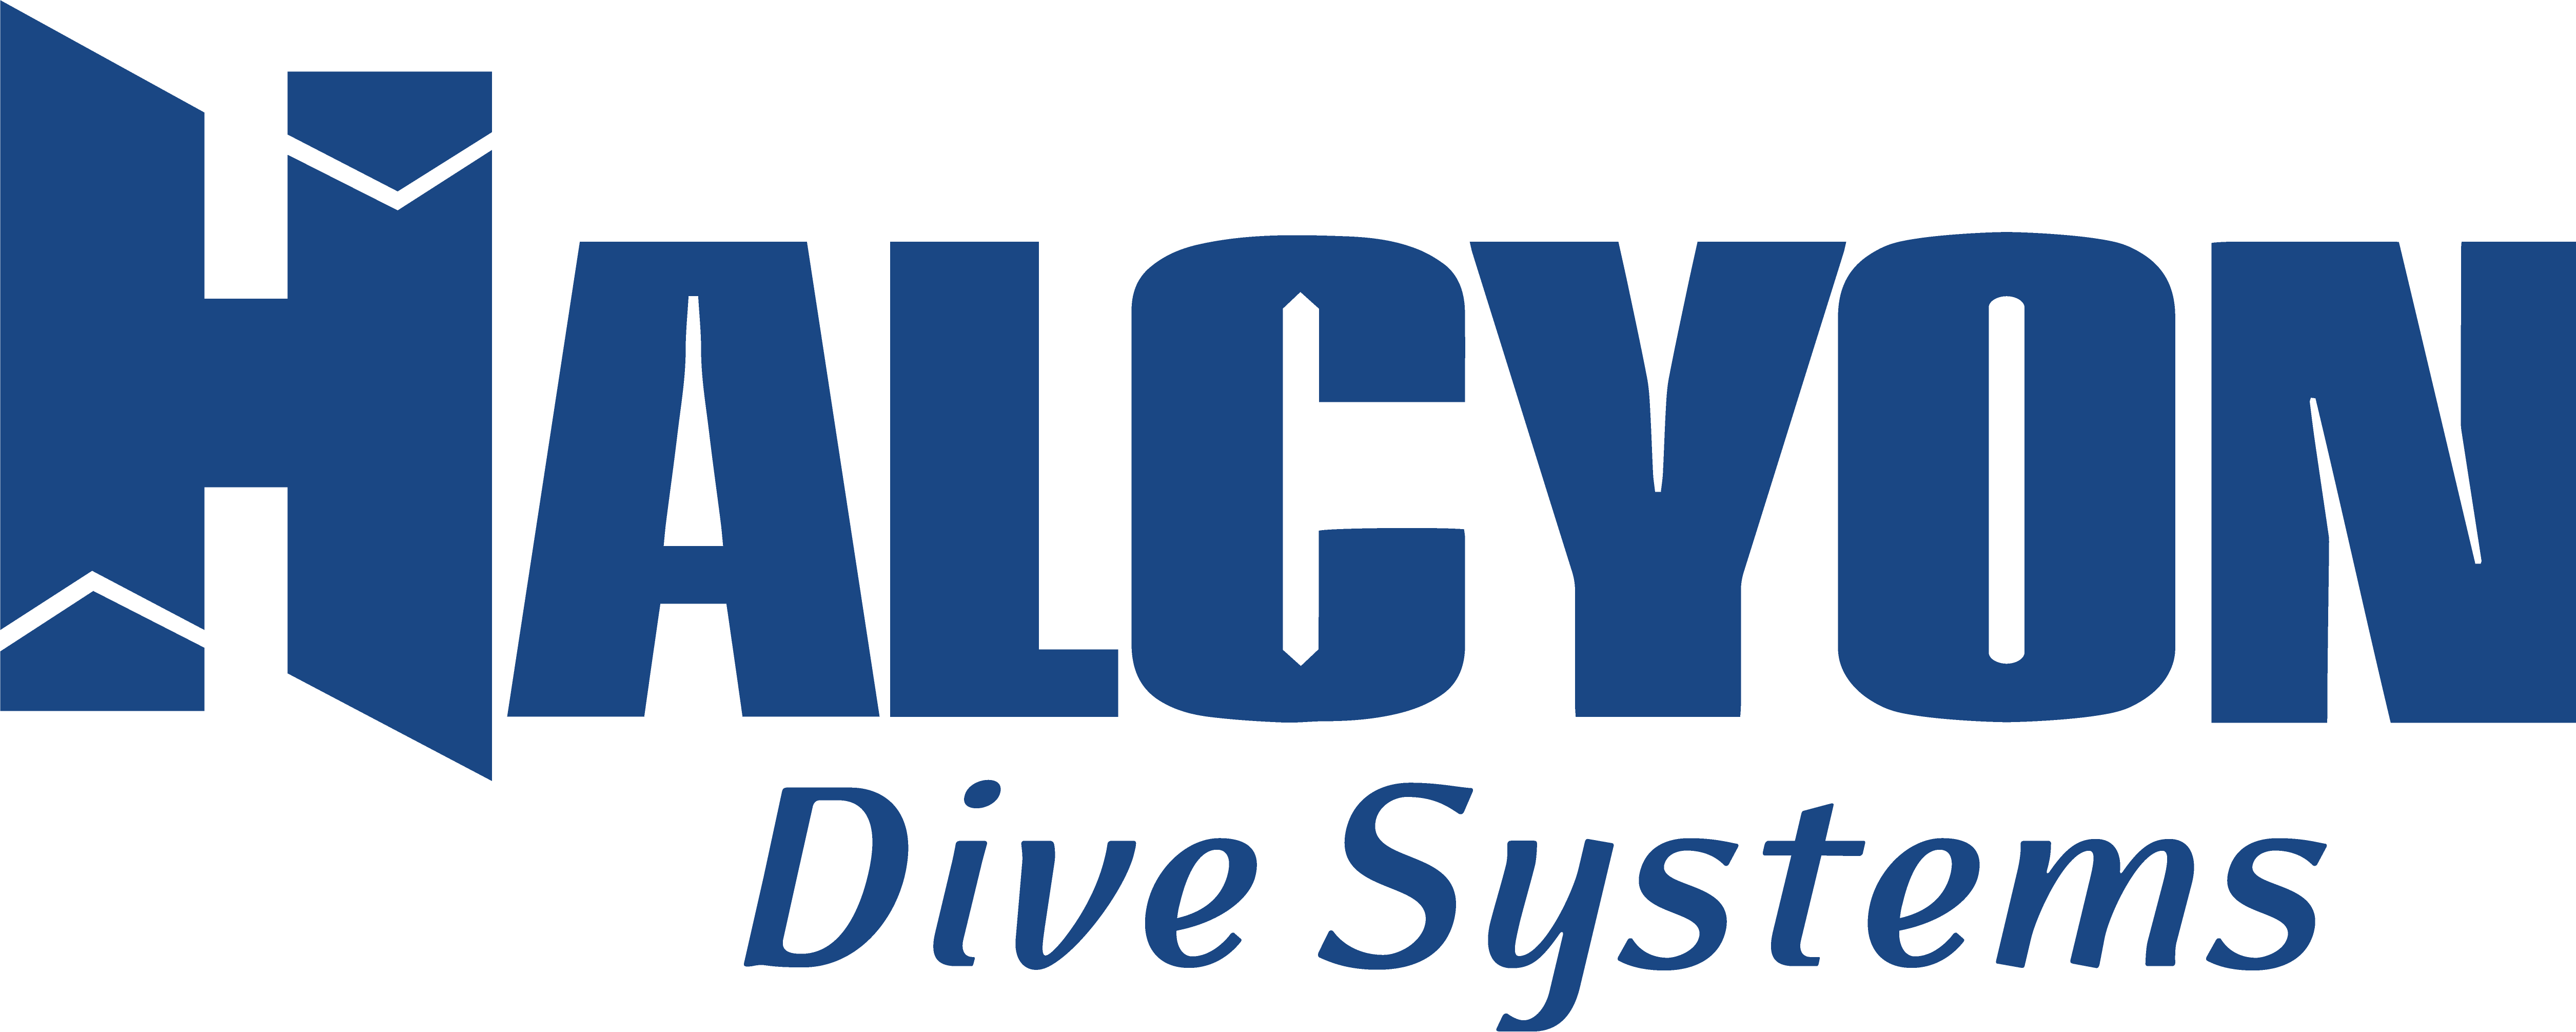 HALYCON Dive Systems